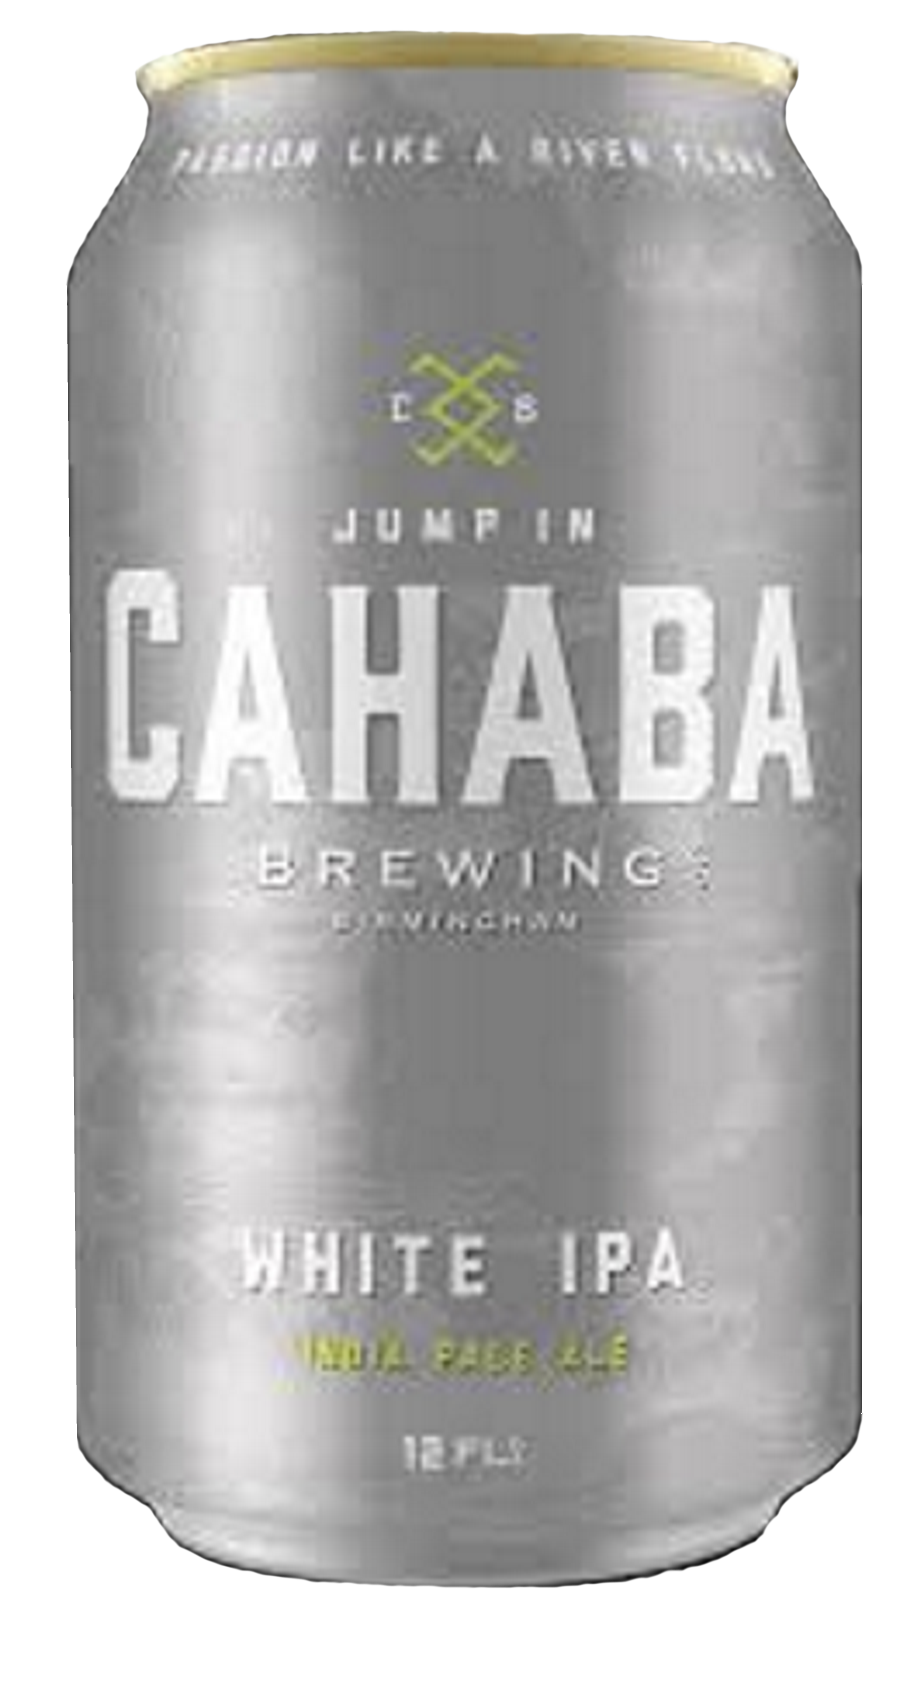 Produktbild von Cahaba White IPA